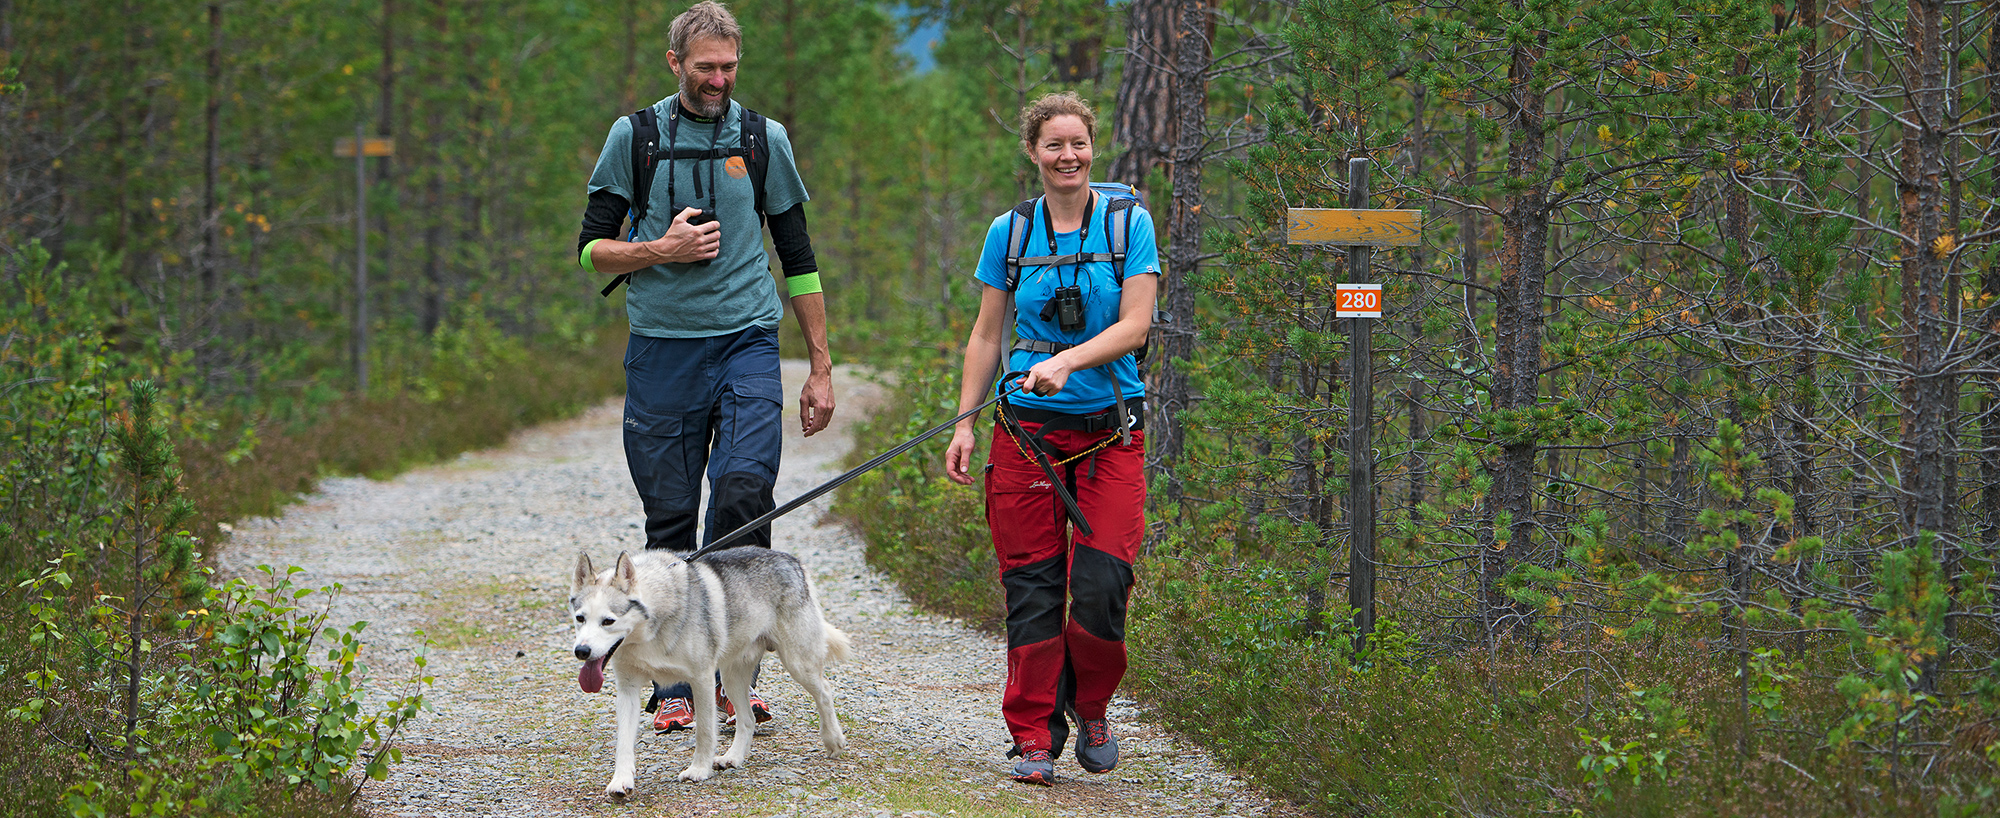 Vandring med hund längs Södra ridvadsrundan. En fjällupplevelse i världsklass i Södra Årefjällen.